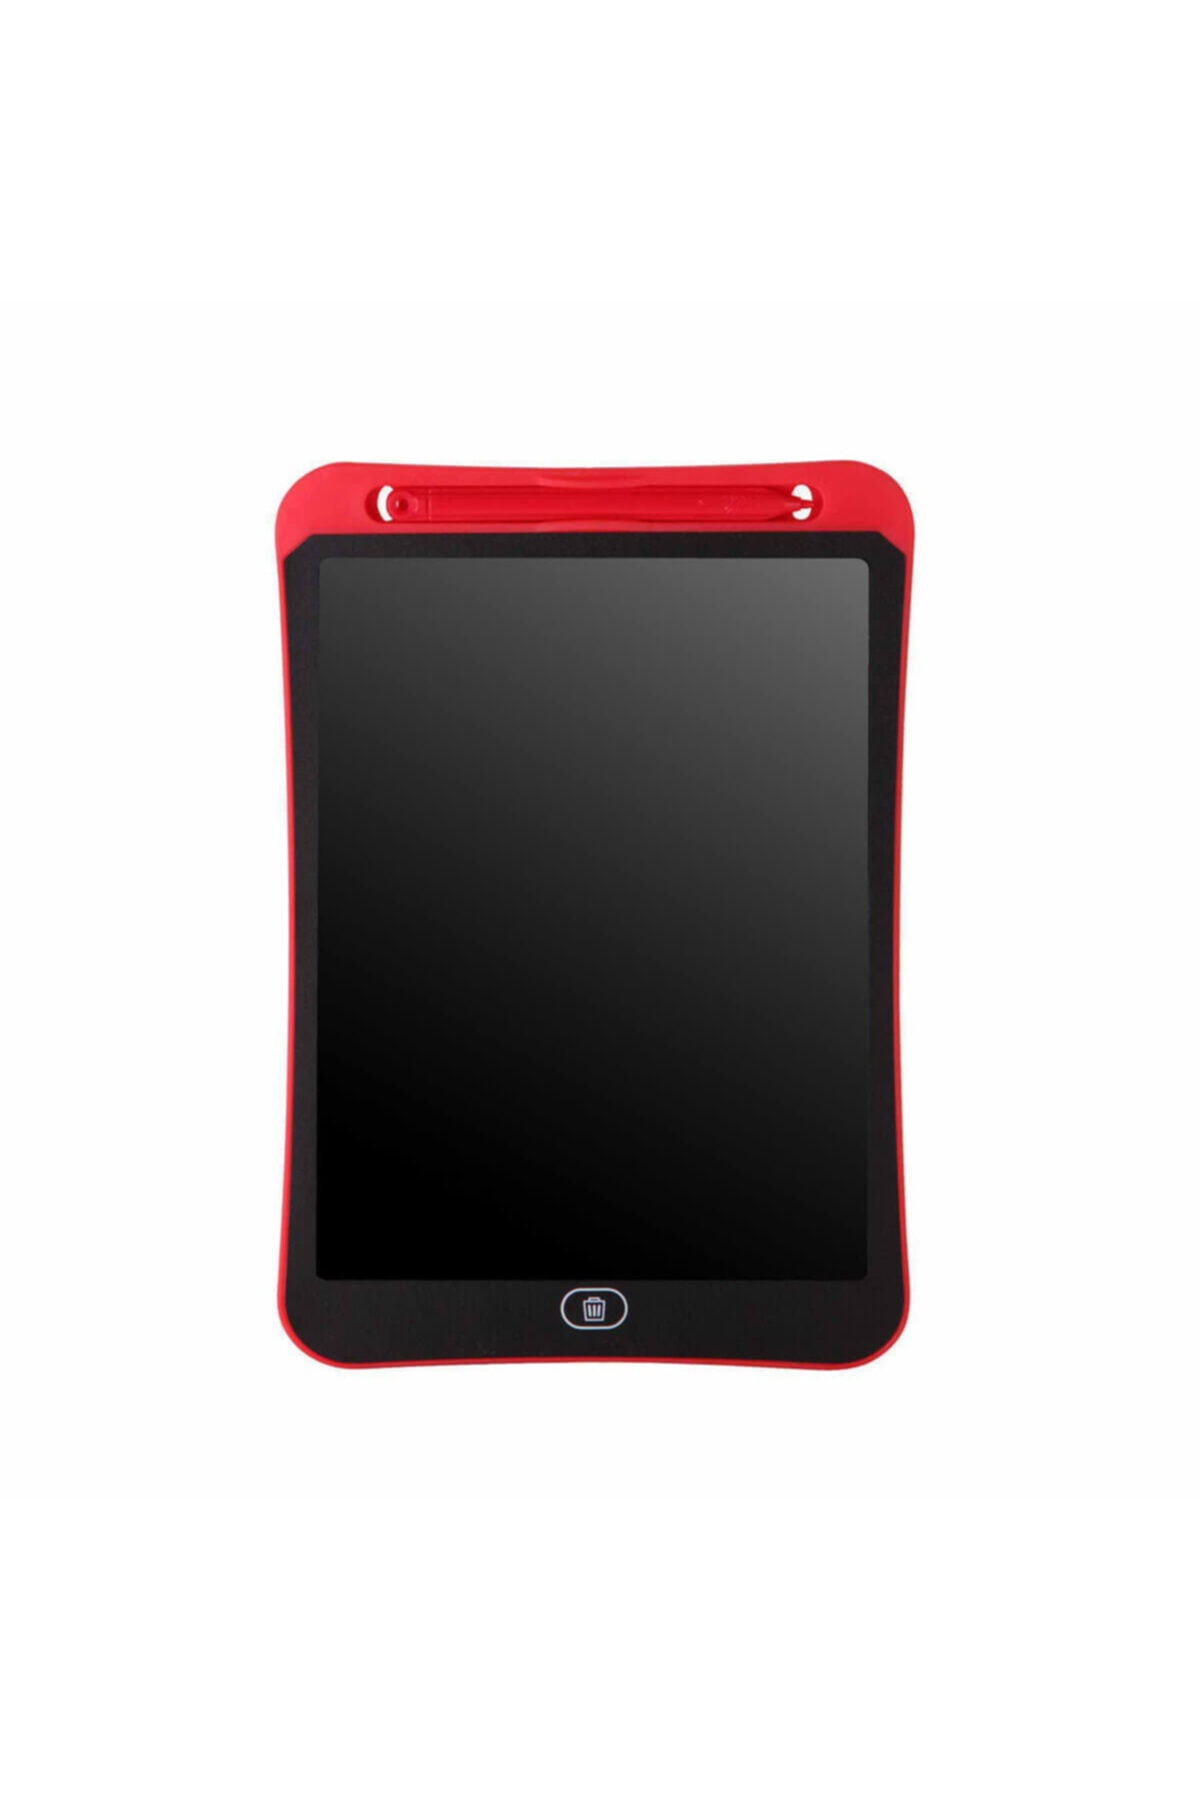 ENFAL OYUNCAK Lc Lcd 10'' Dijital Çizim Tableti - Kırmızı